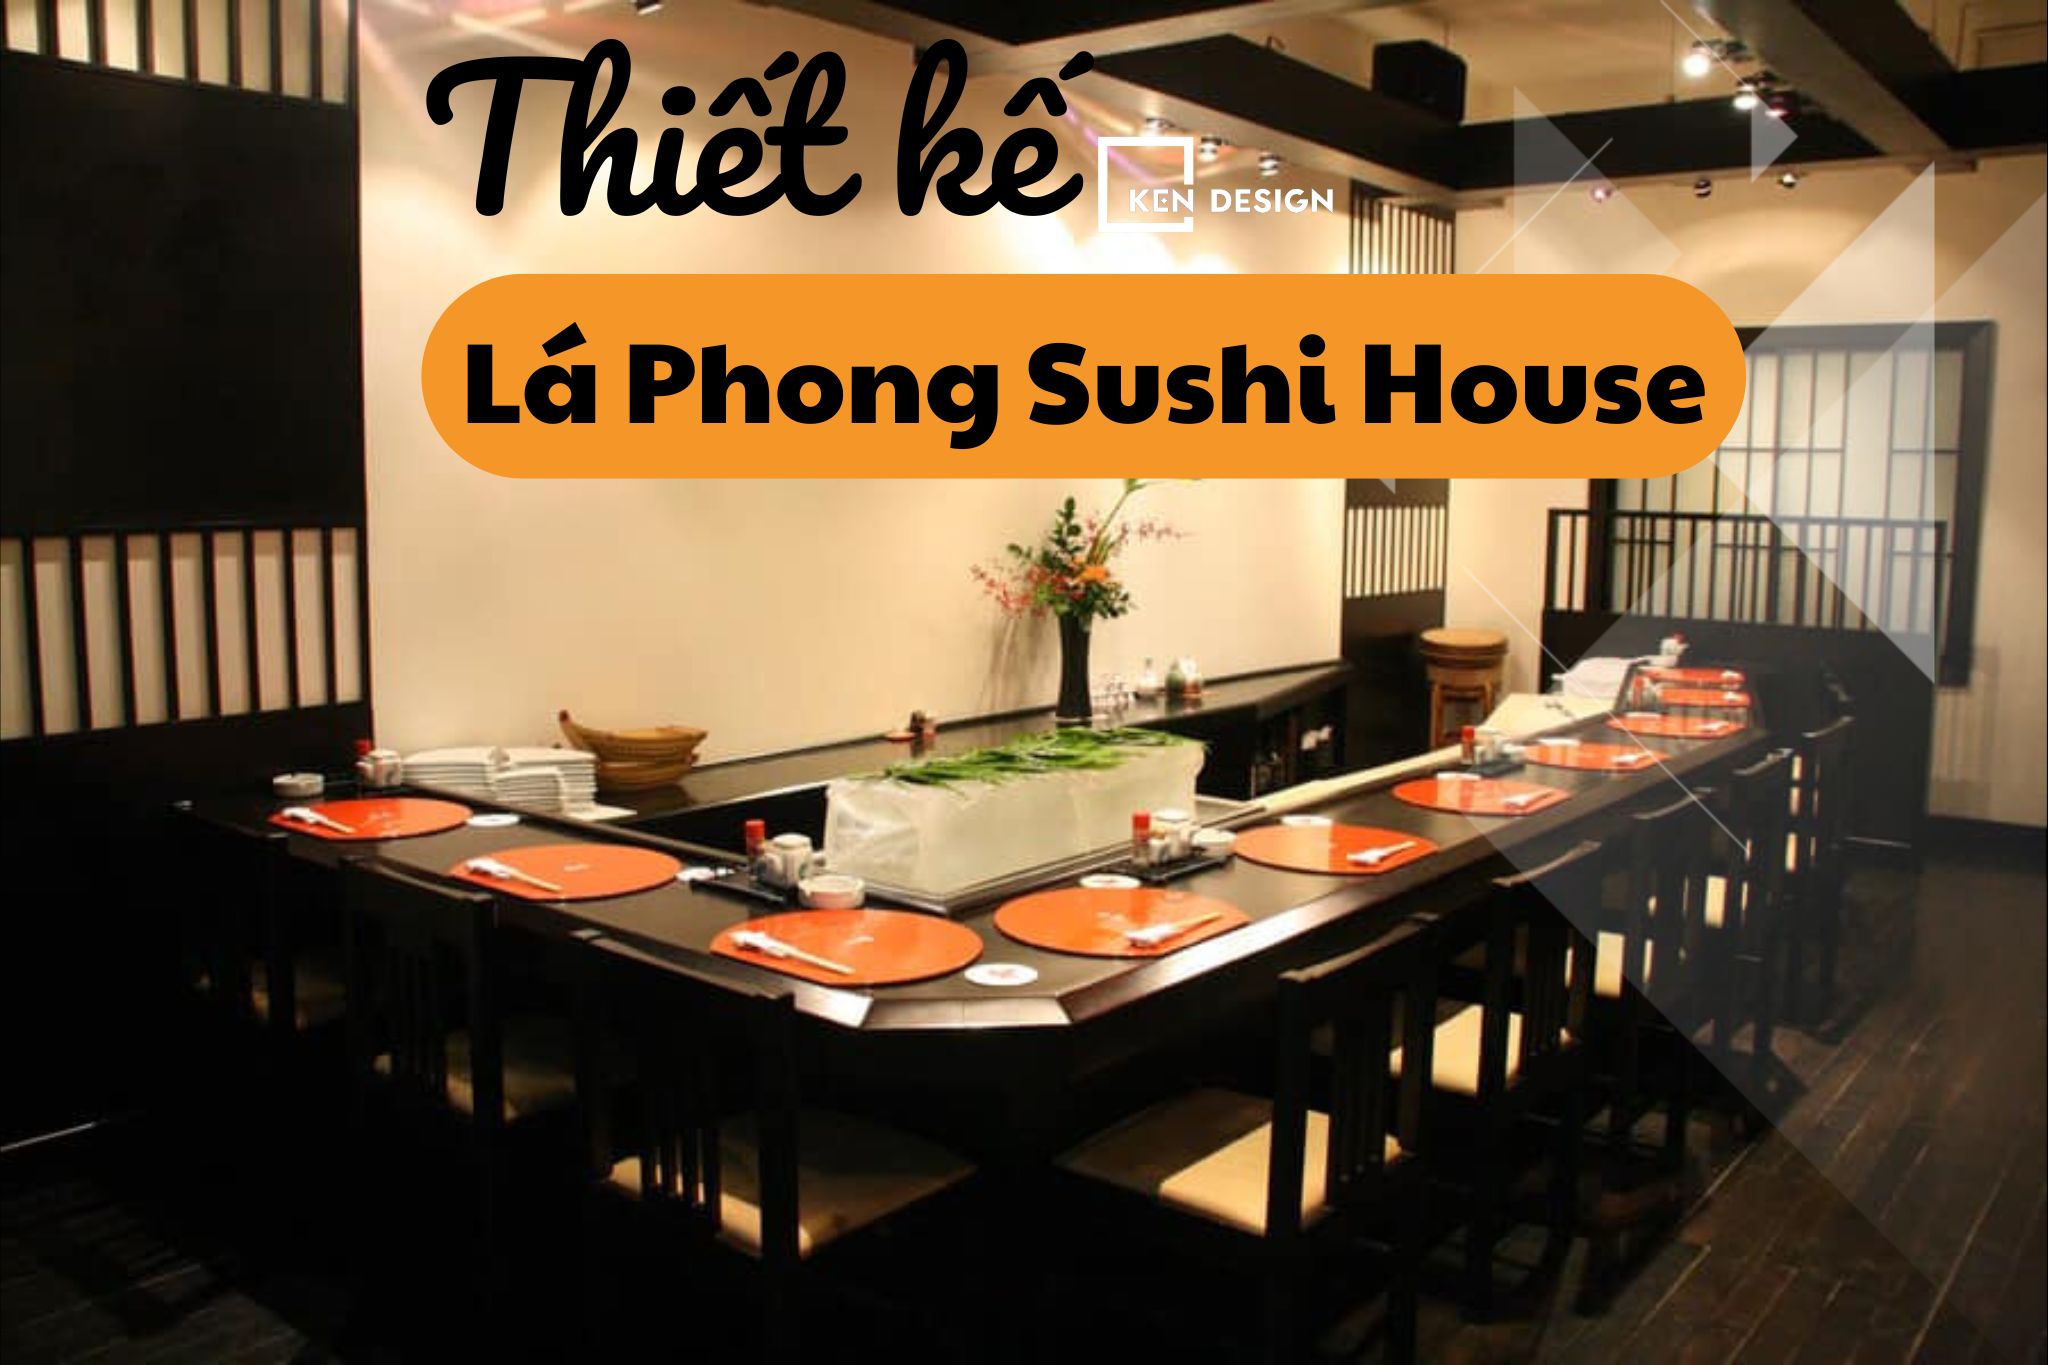 Thiết kế Lá Phong Sushi House có gì độc đáo?